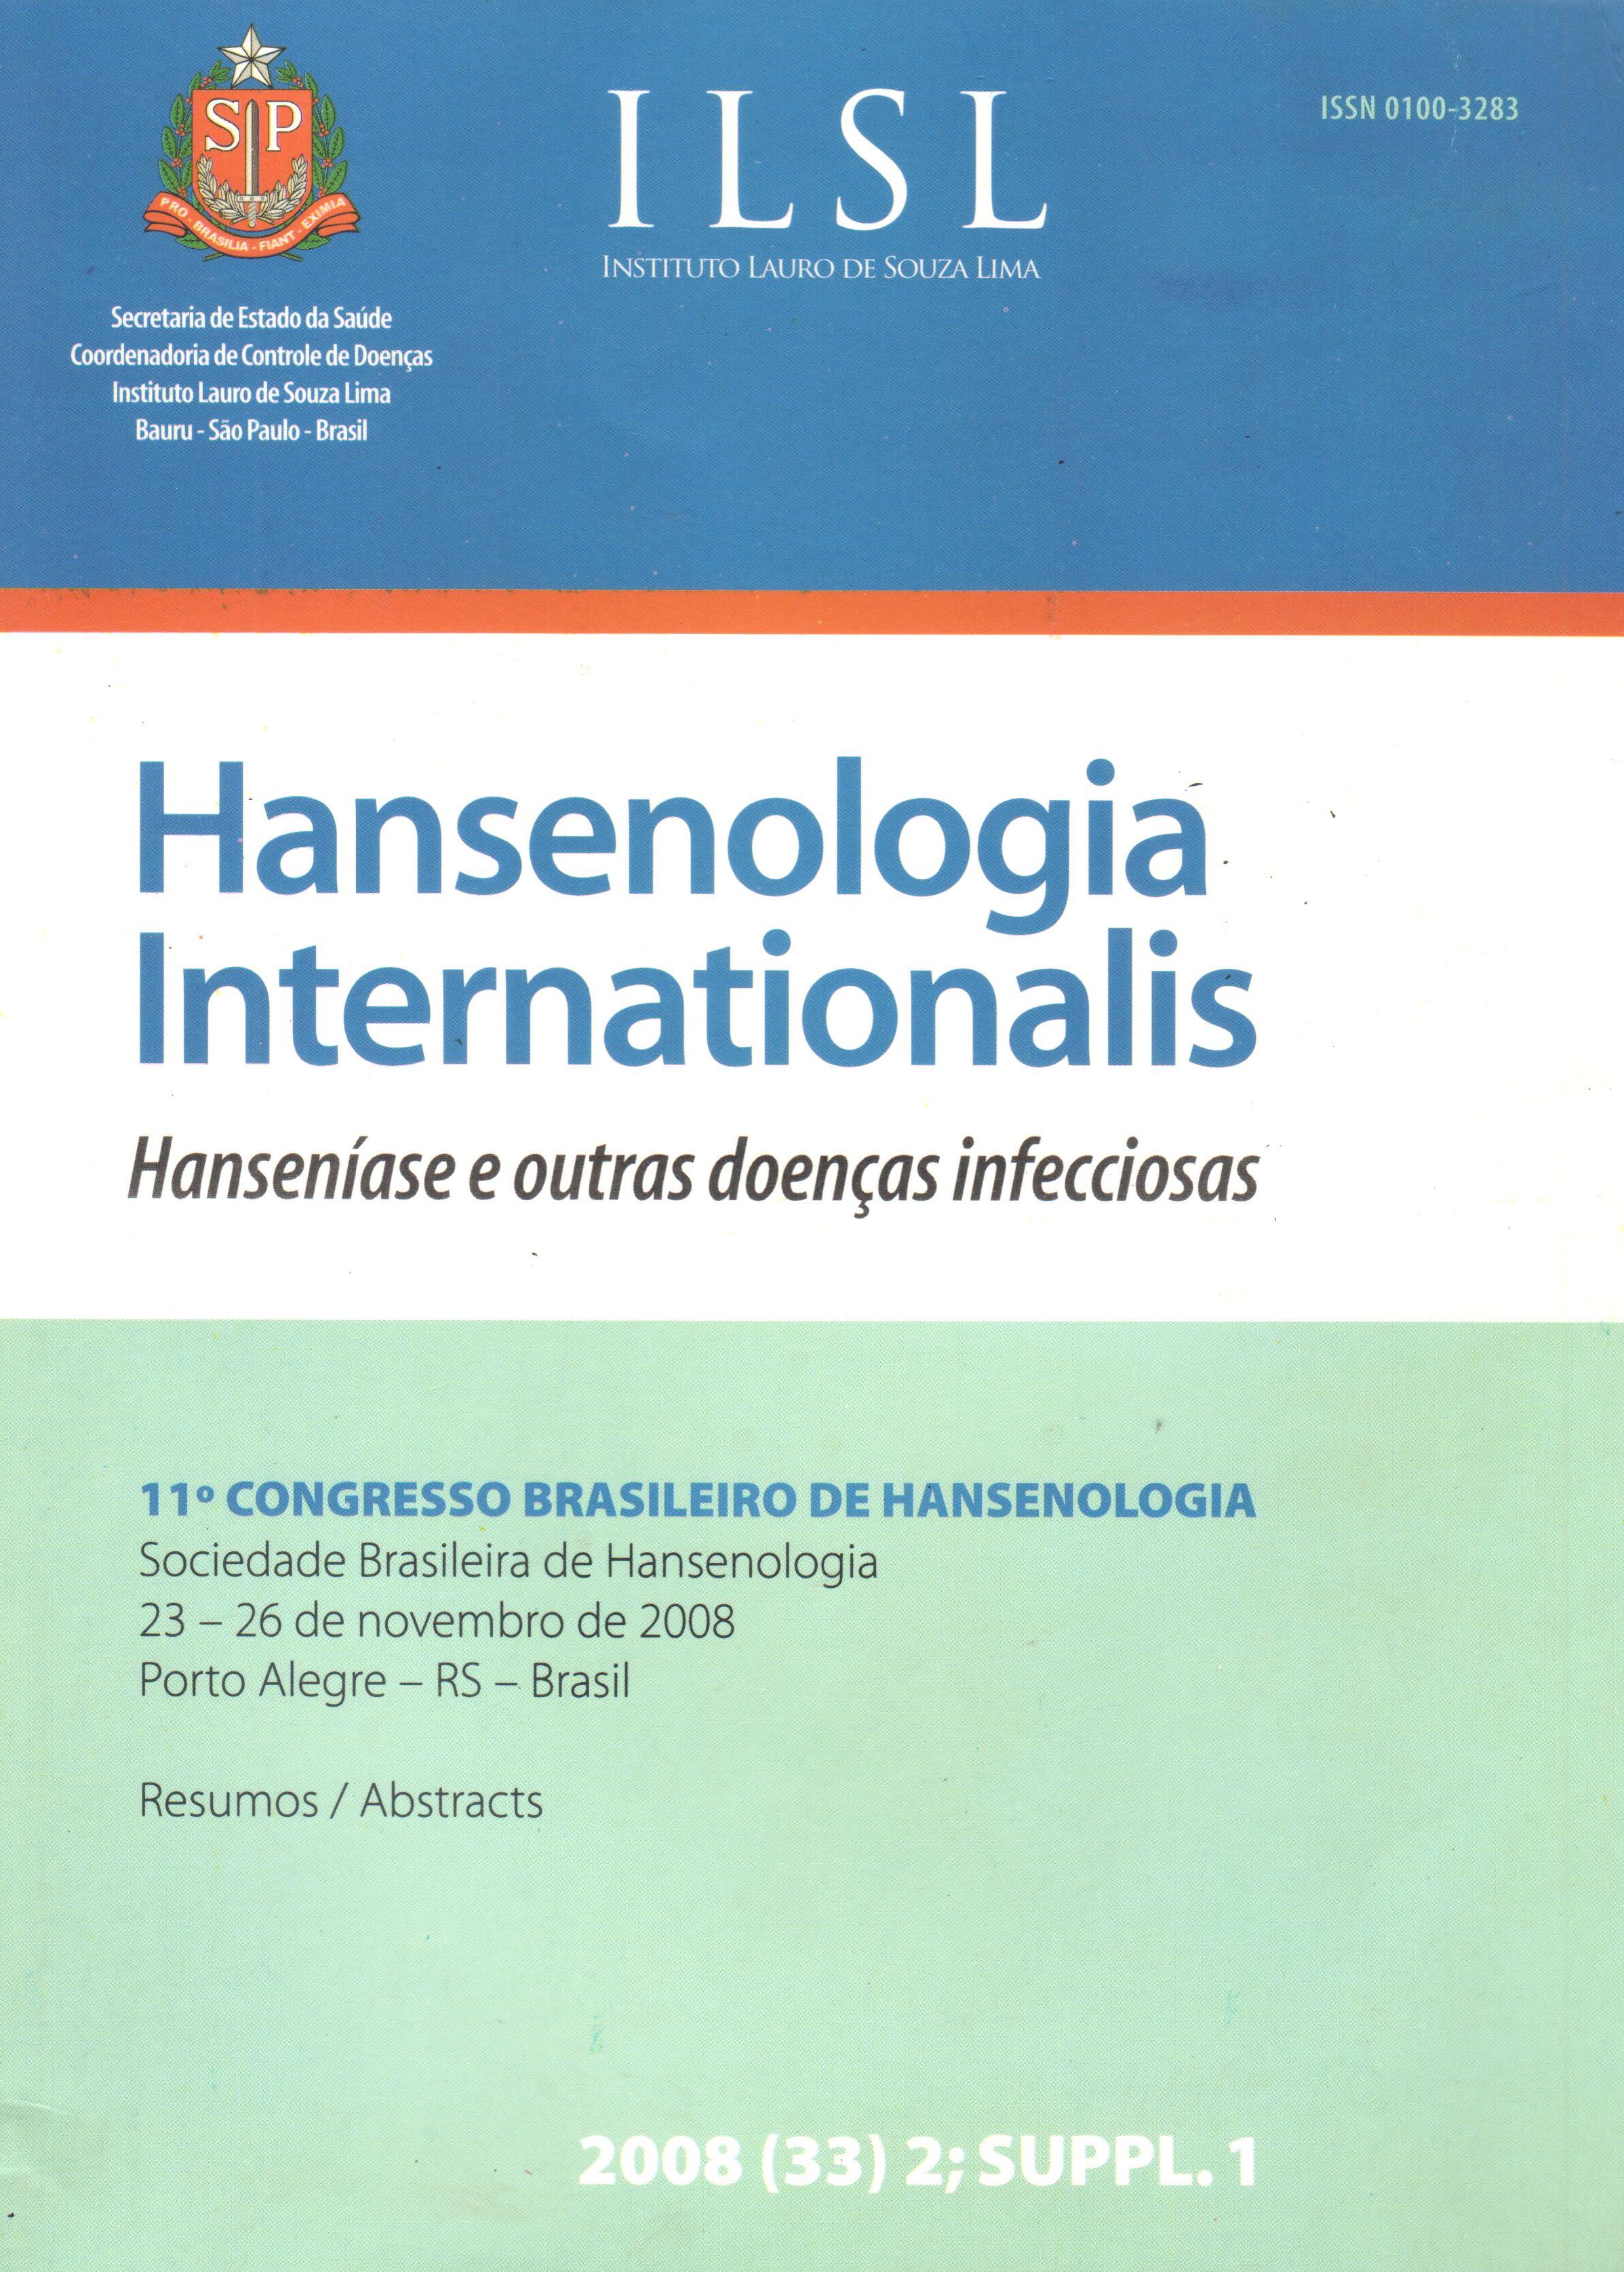 					Ver Vol. 33 Núm. Suppl. (2008): 11º Congresso Brasileiro de Hansenologia - Sociedade Brasileira de Hansenologia - 23 a 26 de novembro de 2008 - Porto Alegre - RS - Brasil
				